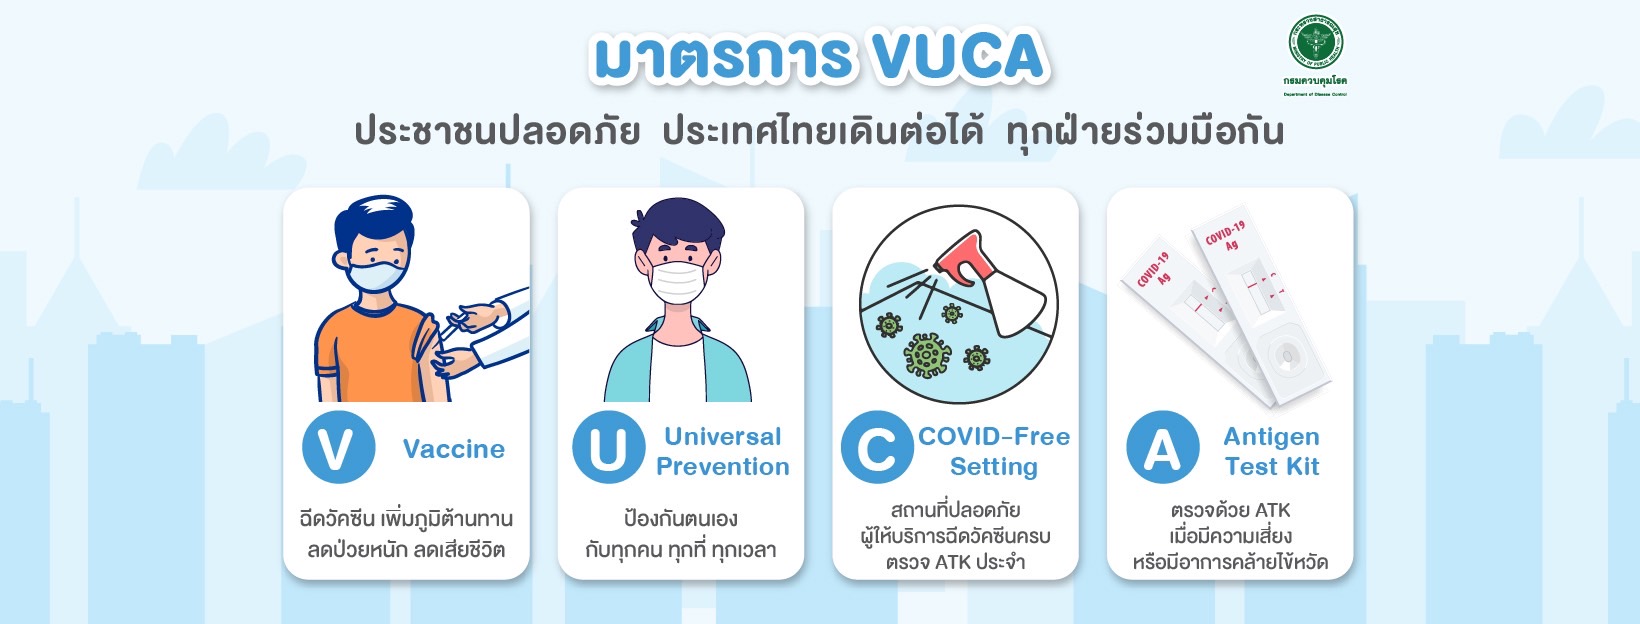 มาตรการ VUCA